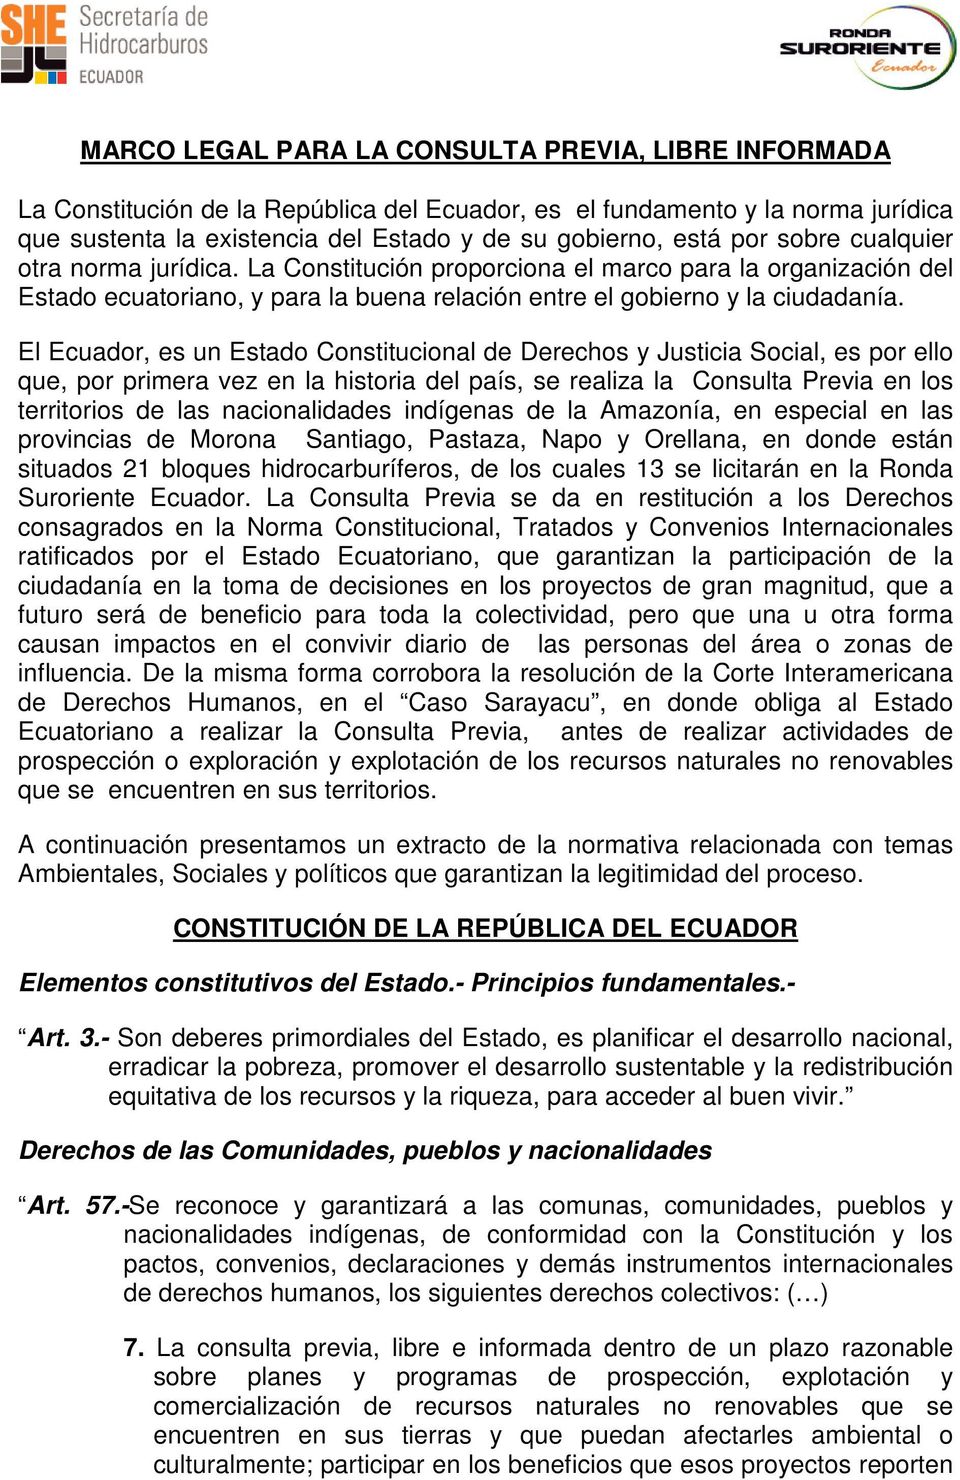 El Ecuador, es un Estado Constitucional de Derechos y Justicia Social, es por ello que, por primera vez en la historia del país, se realiza la Consulta Previa en los territorios de las nacionalidades